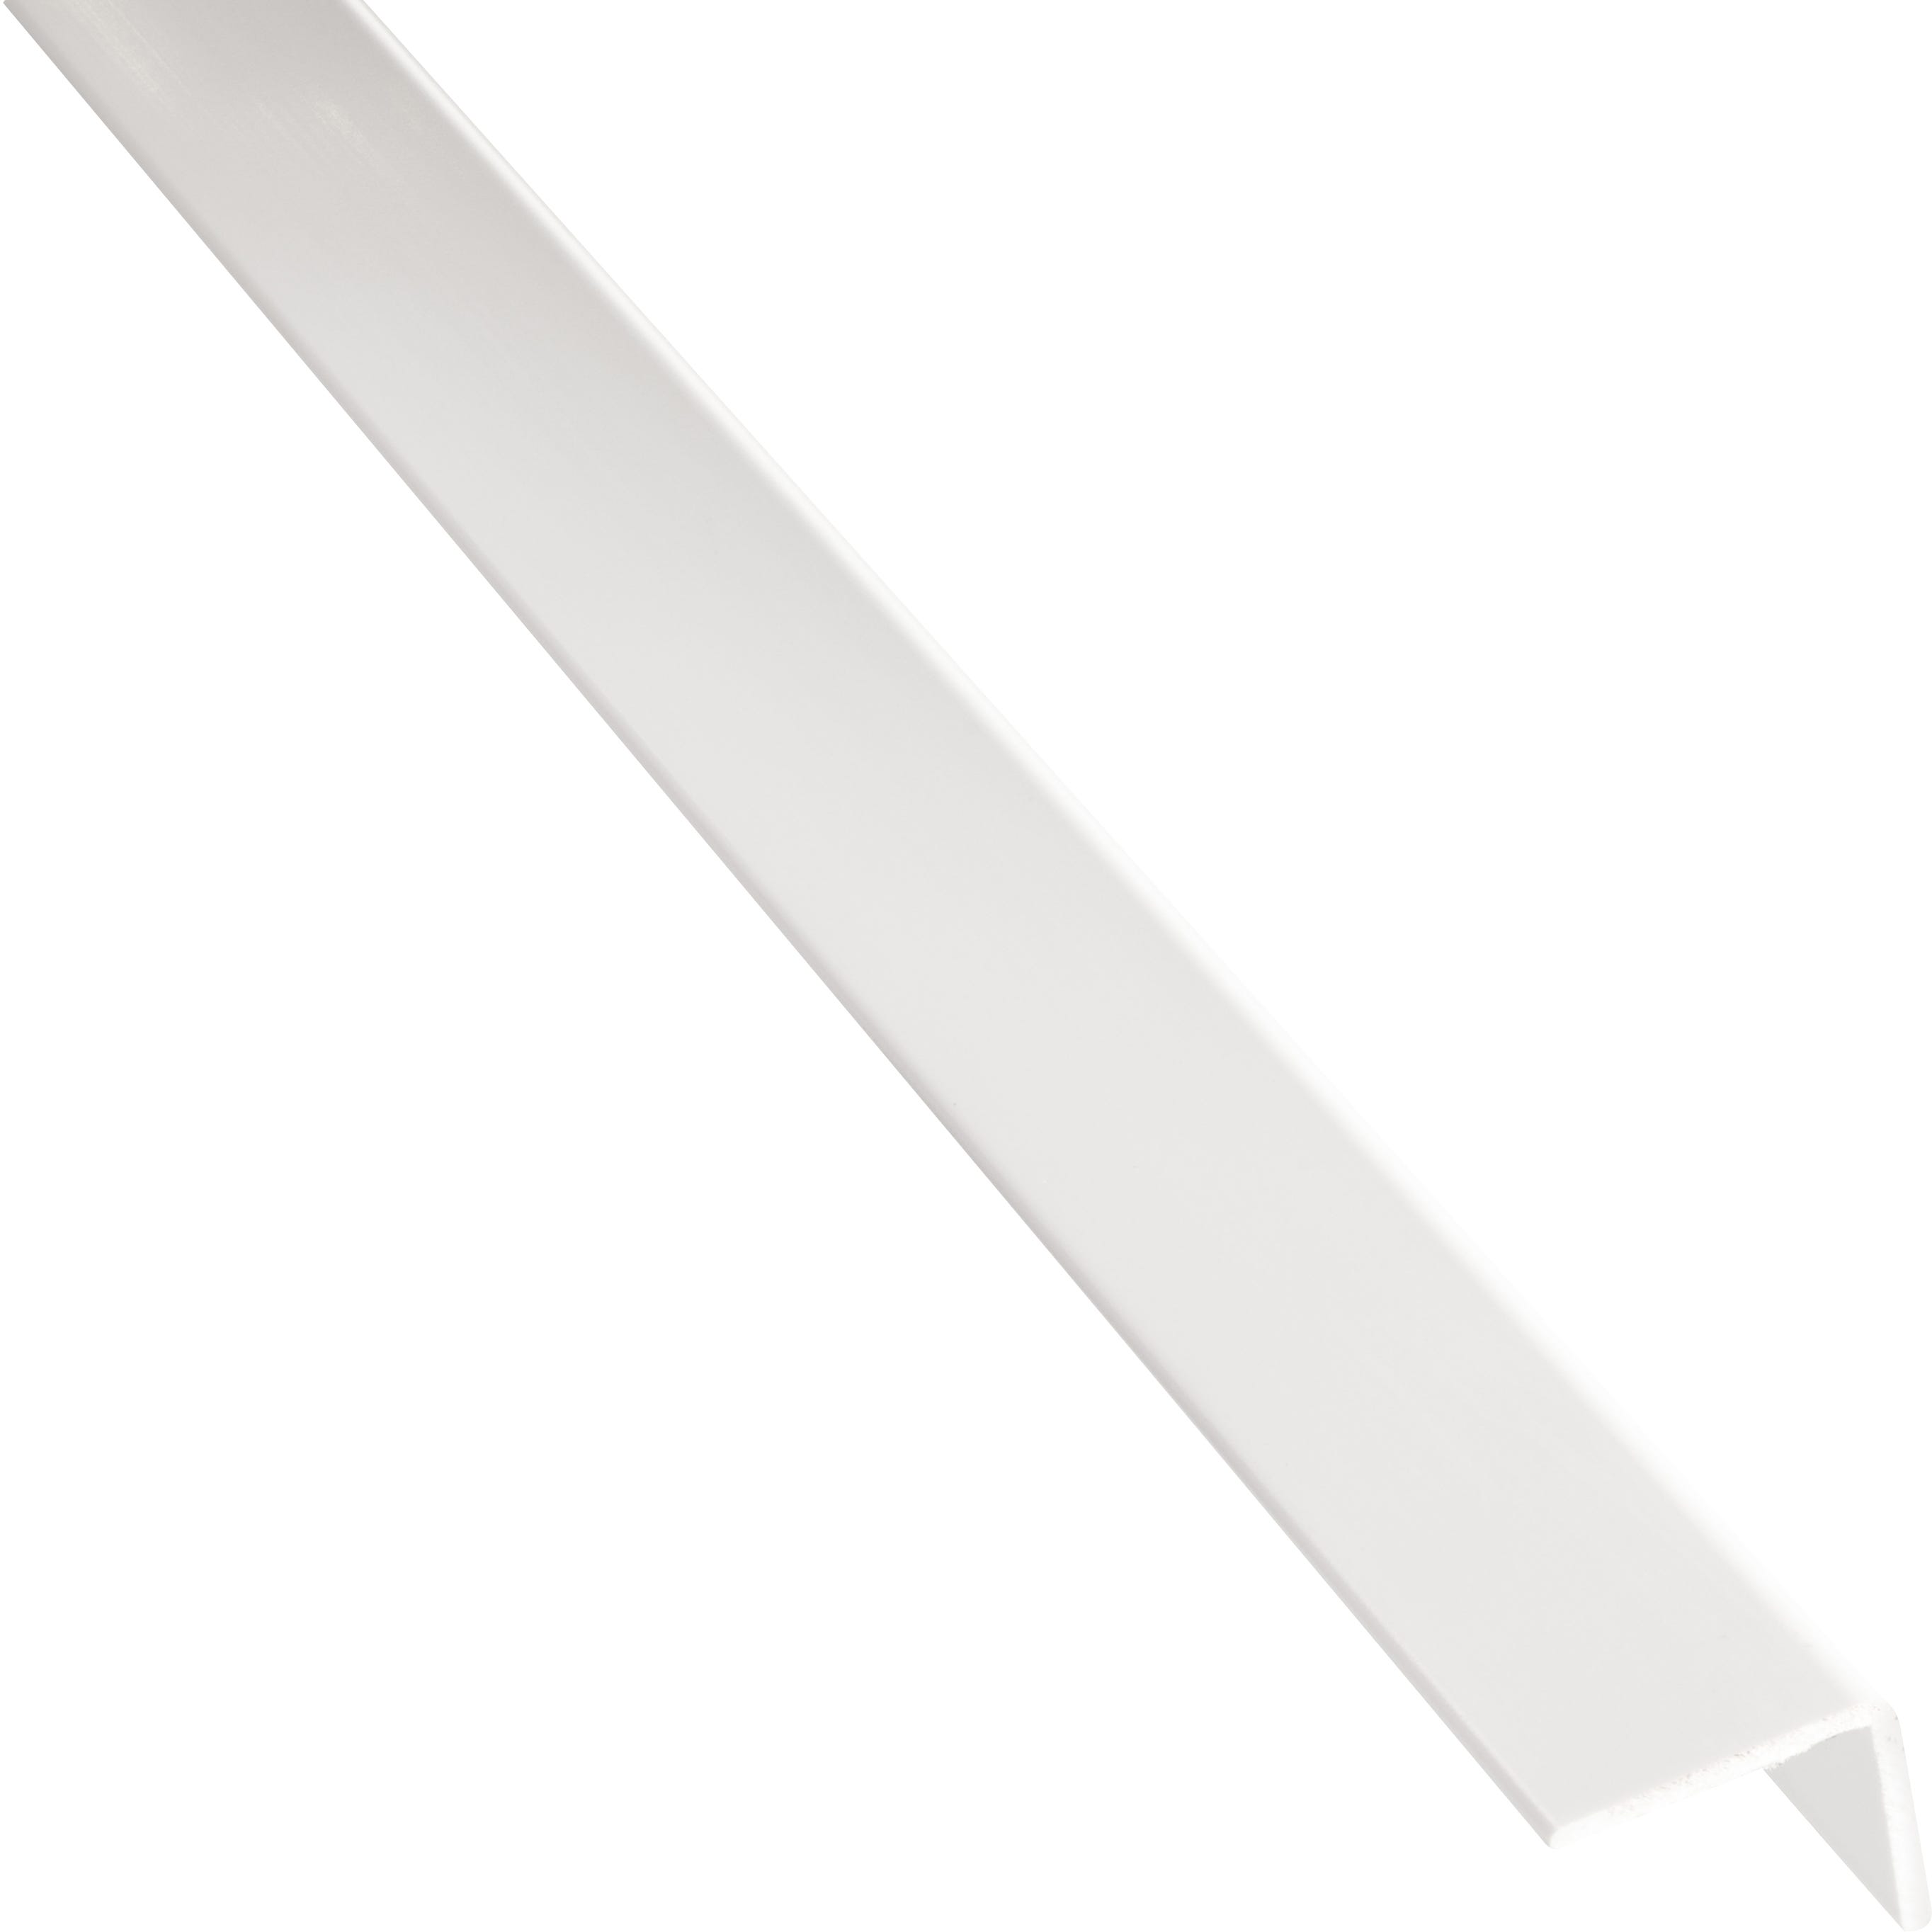 Angulo de color blanco 35x35 mm y 2 metros, comprar online